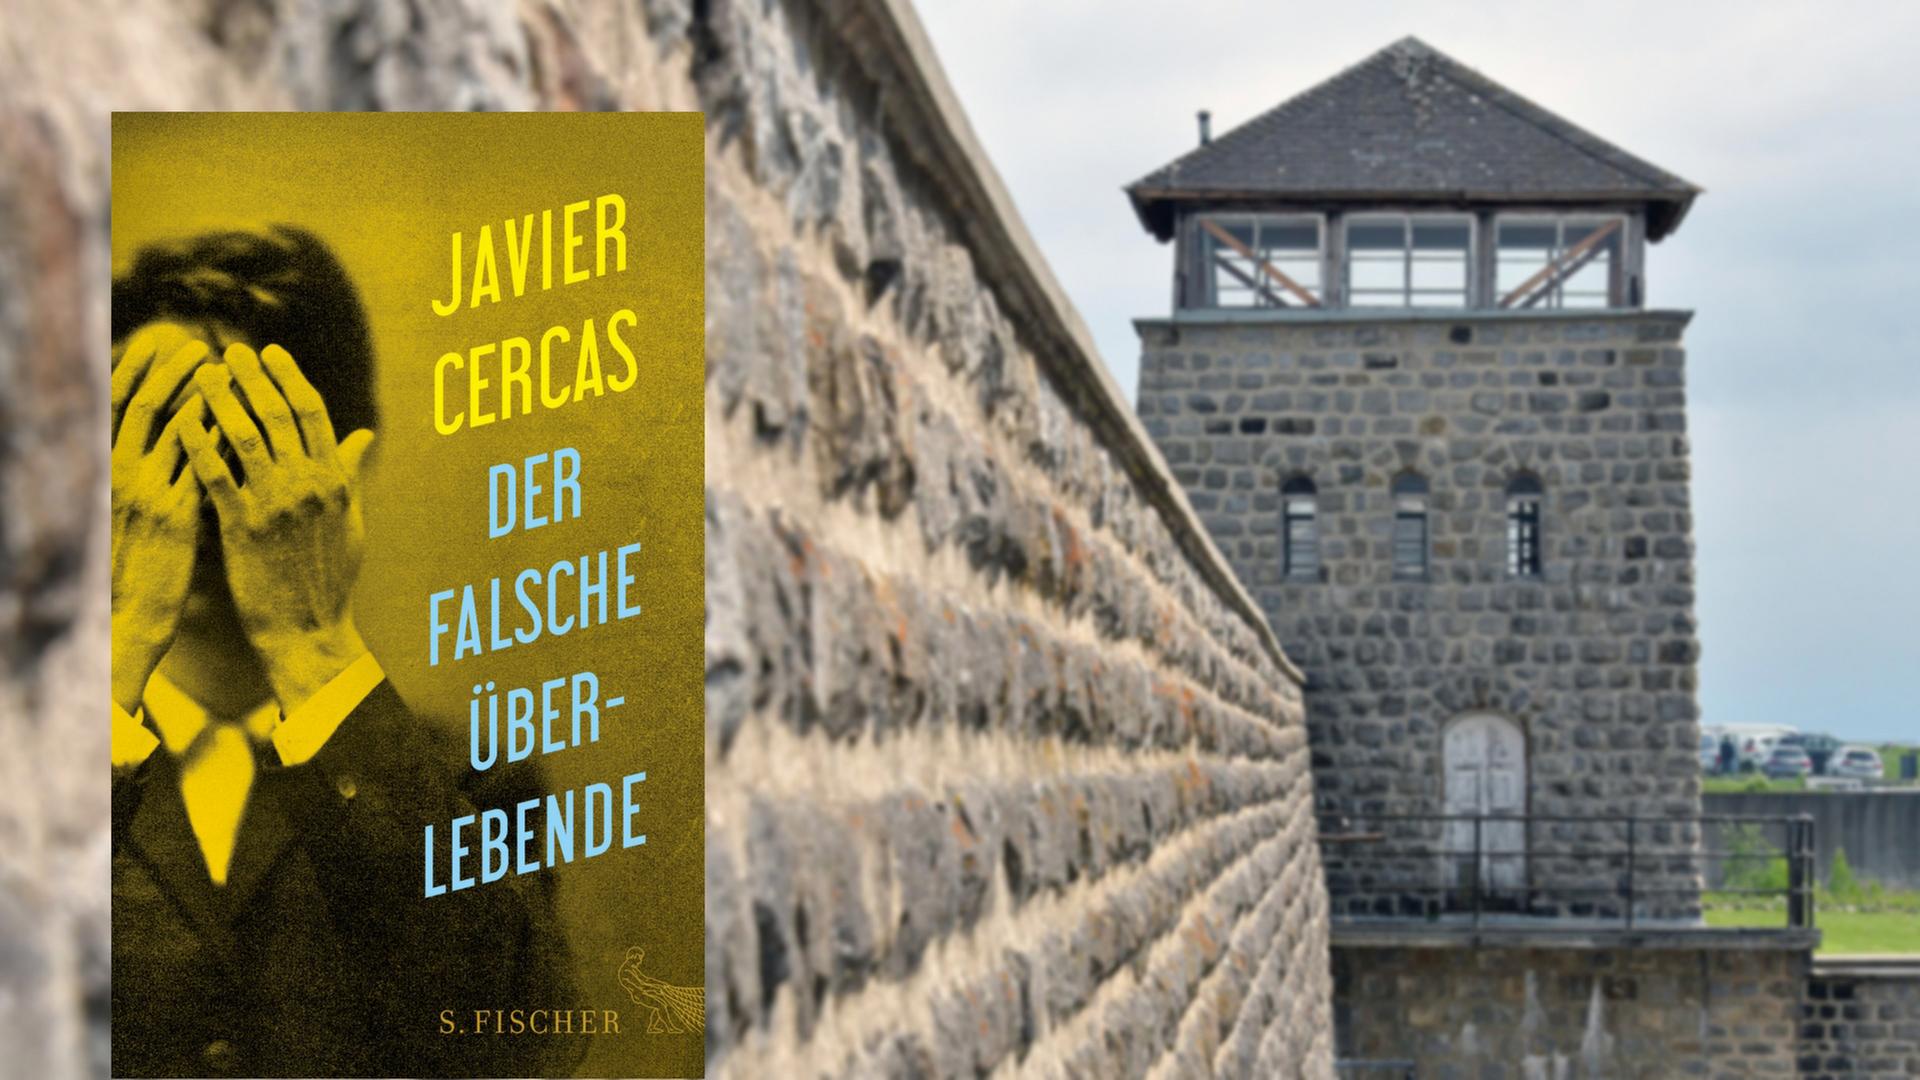 Cover von Javier Cercas "Der falsche Überlebende", im Hintergrund eine Aufnahme von einem Wachturm im ehemaligen Konzentrationslager Mauthausen aus dem Jahr 2017